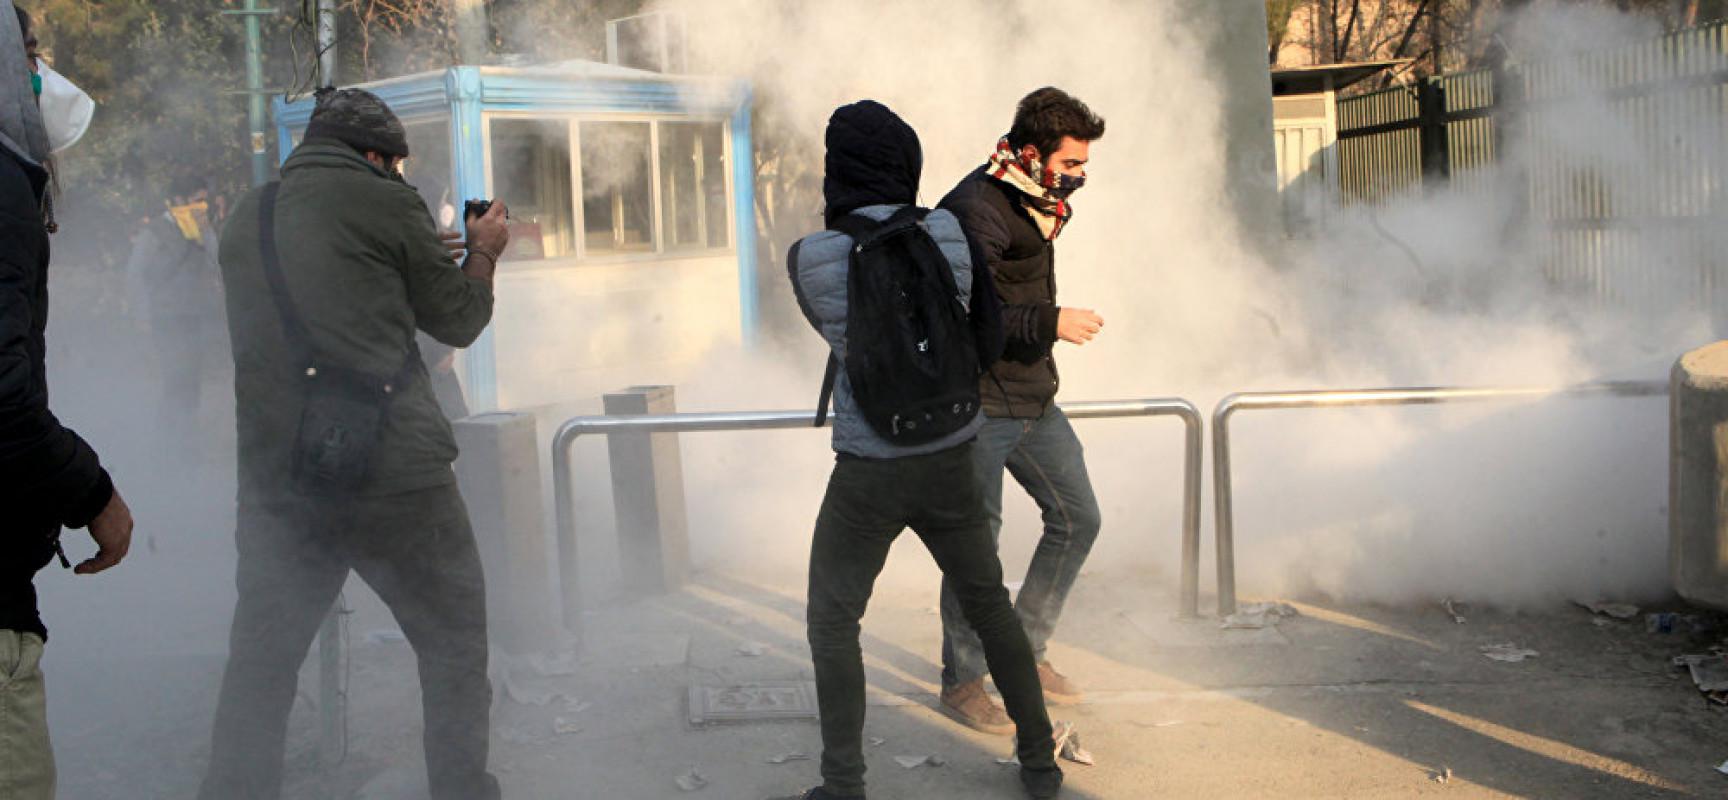 ايران شهدت العديد من المظاهرات احتجاجا على تردي الأوضاع الاجتماعية والاقتصادية